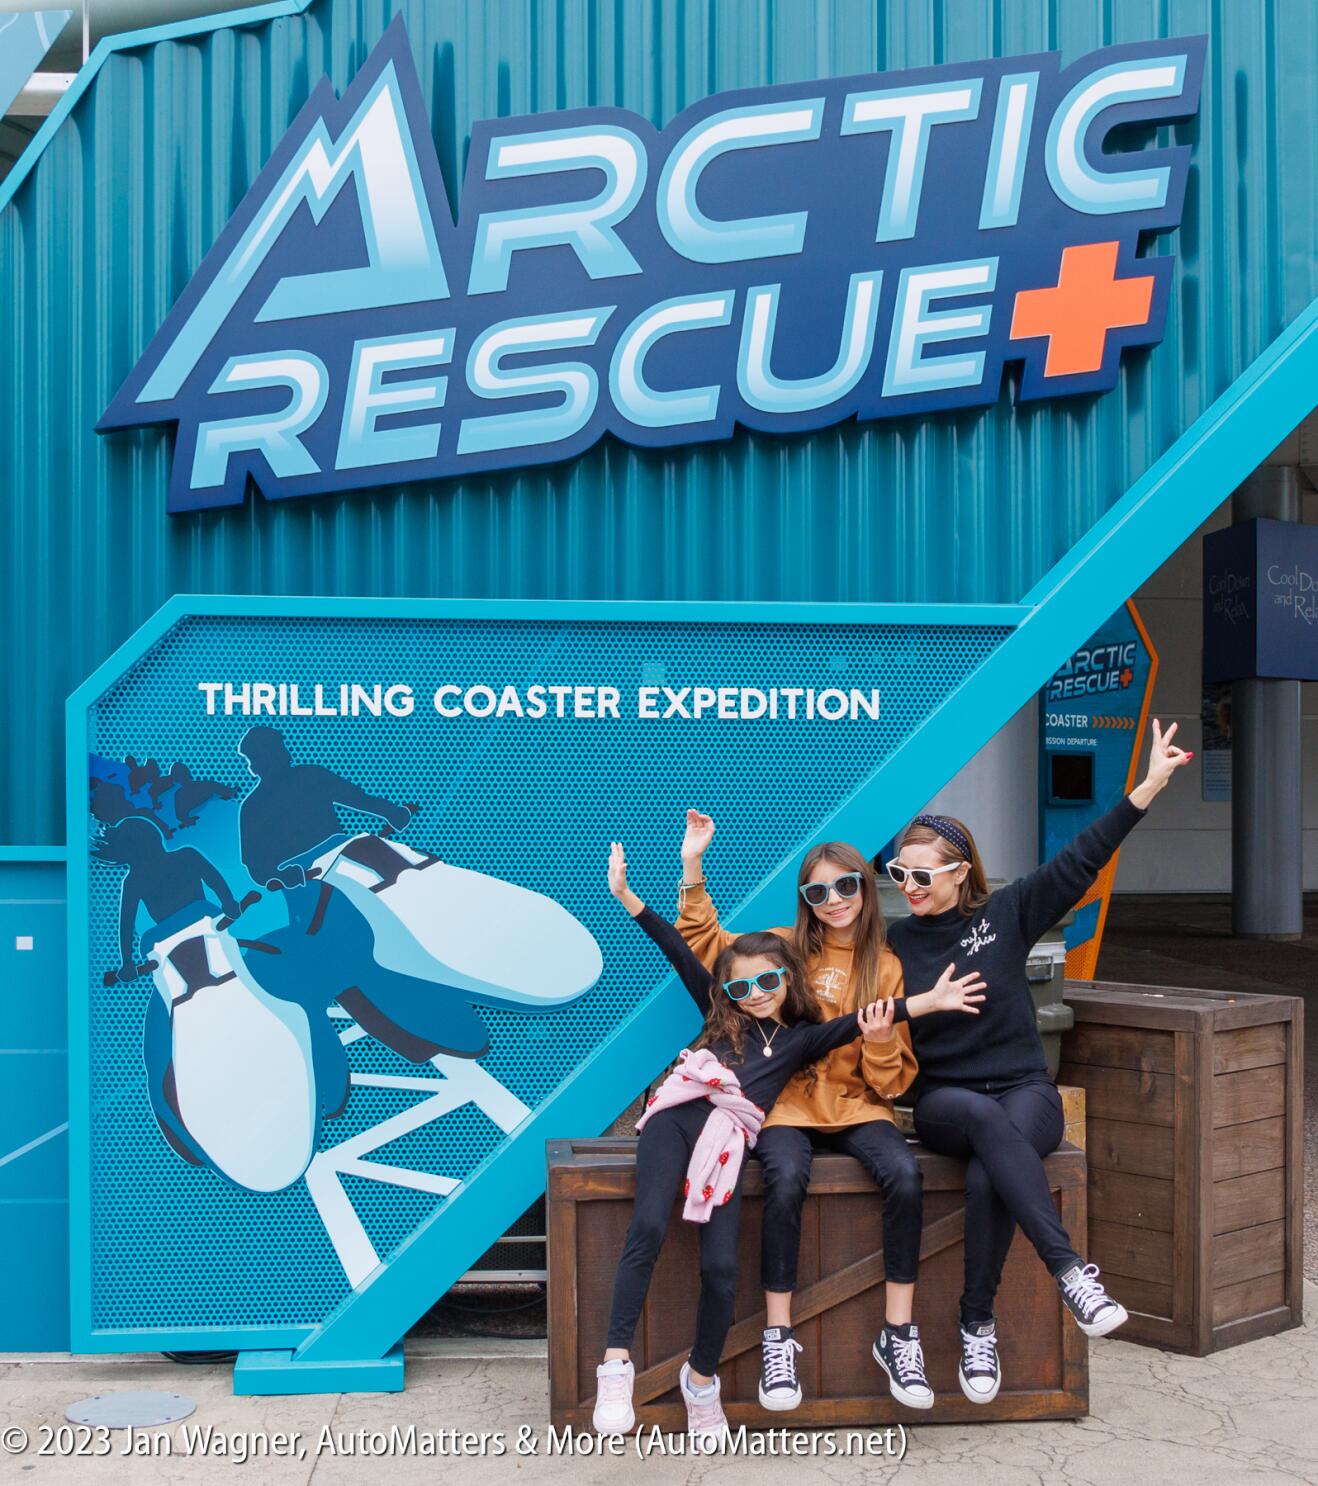 Arctic Rescue - Now Open